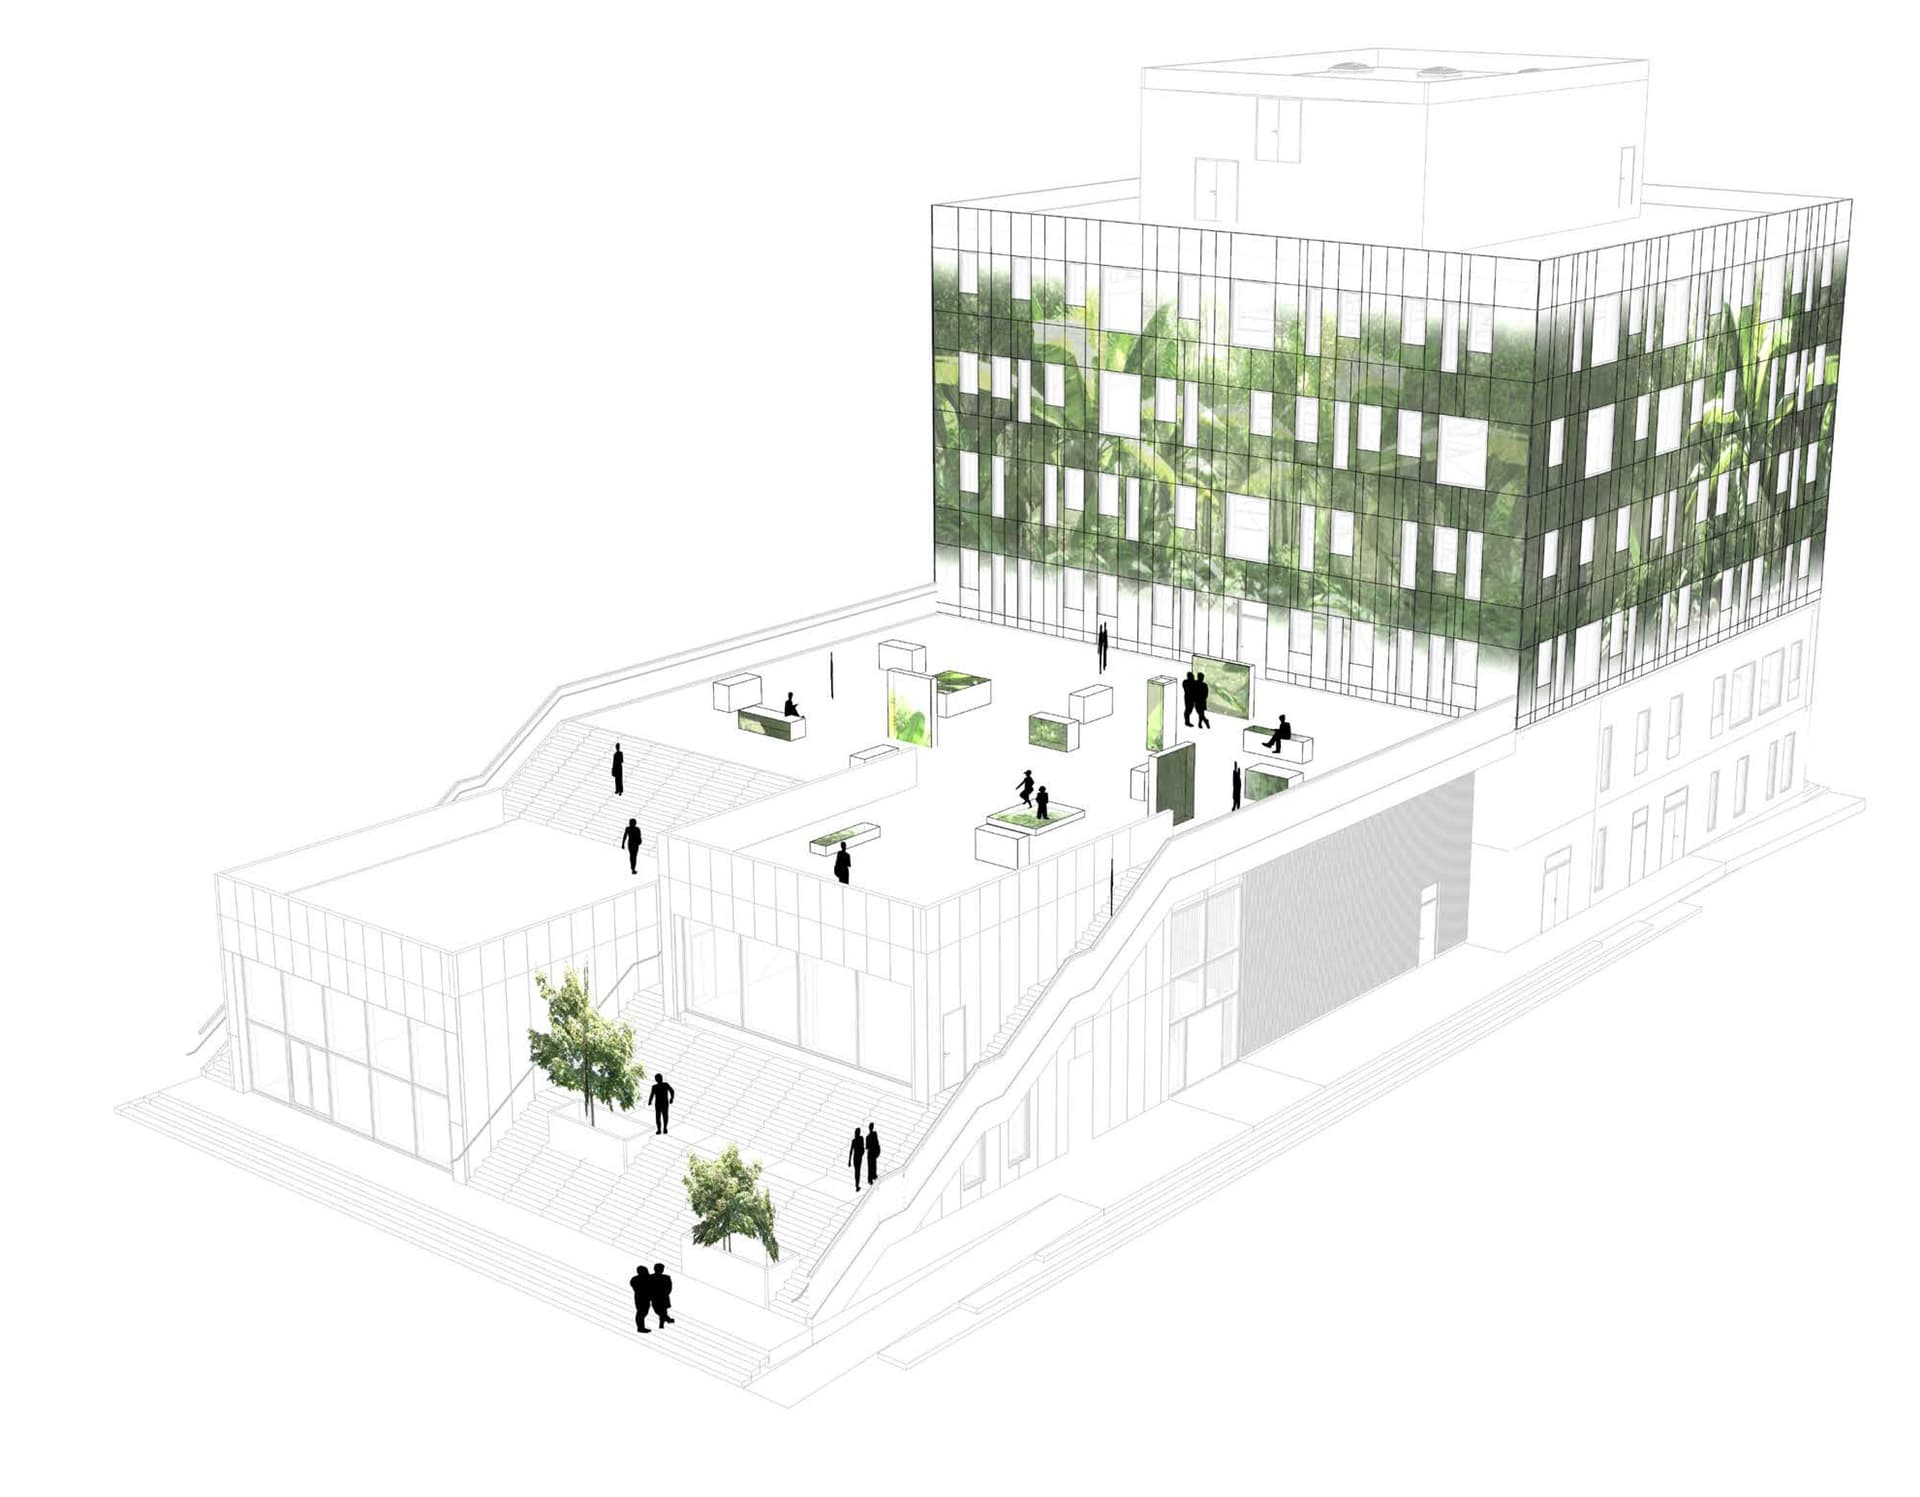 Det nye byrum bliver skabt i tæt samspil mellem arkitektur og videokunst, hvor et af verdens største videoinstallationer, "The Garden in the Machine” skabt af Jesper Just, kommer til at oplyse facaden af den nye bygning fra slutningen af 2021.